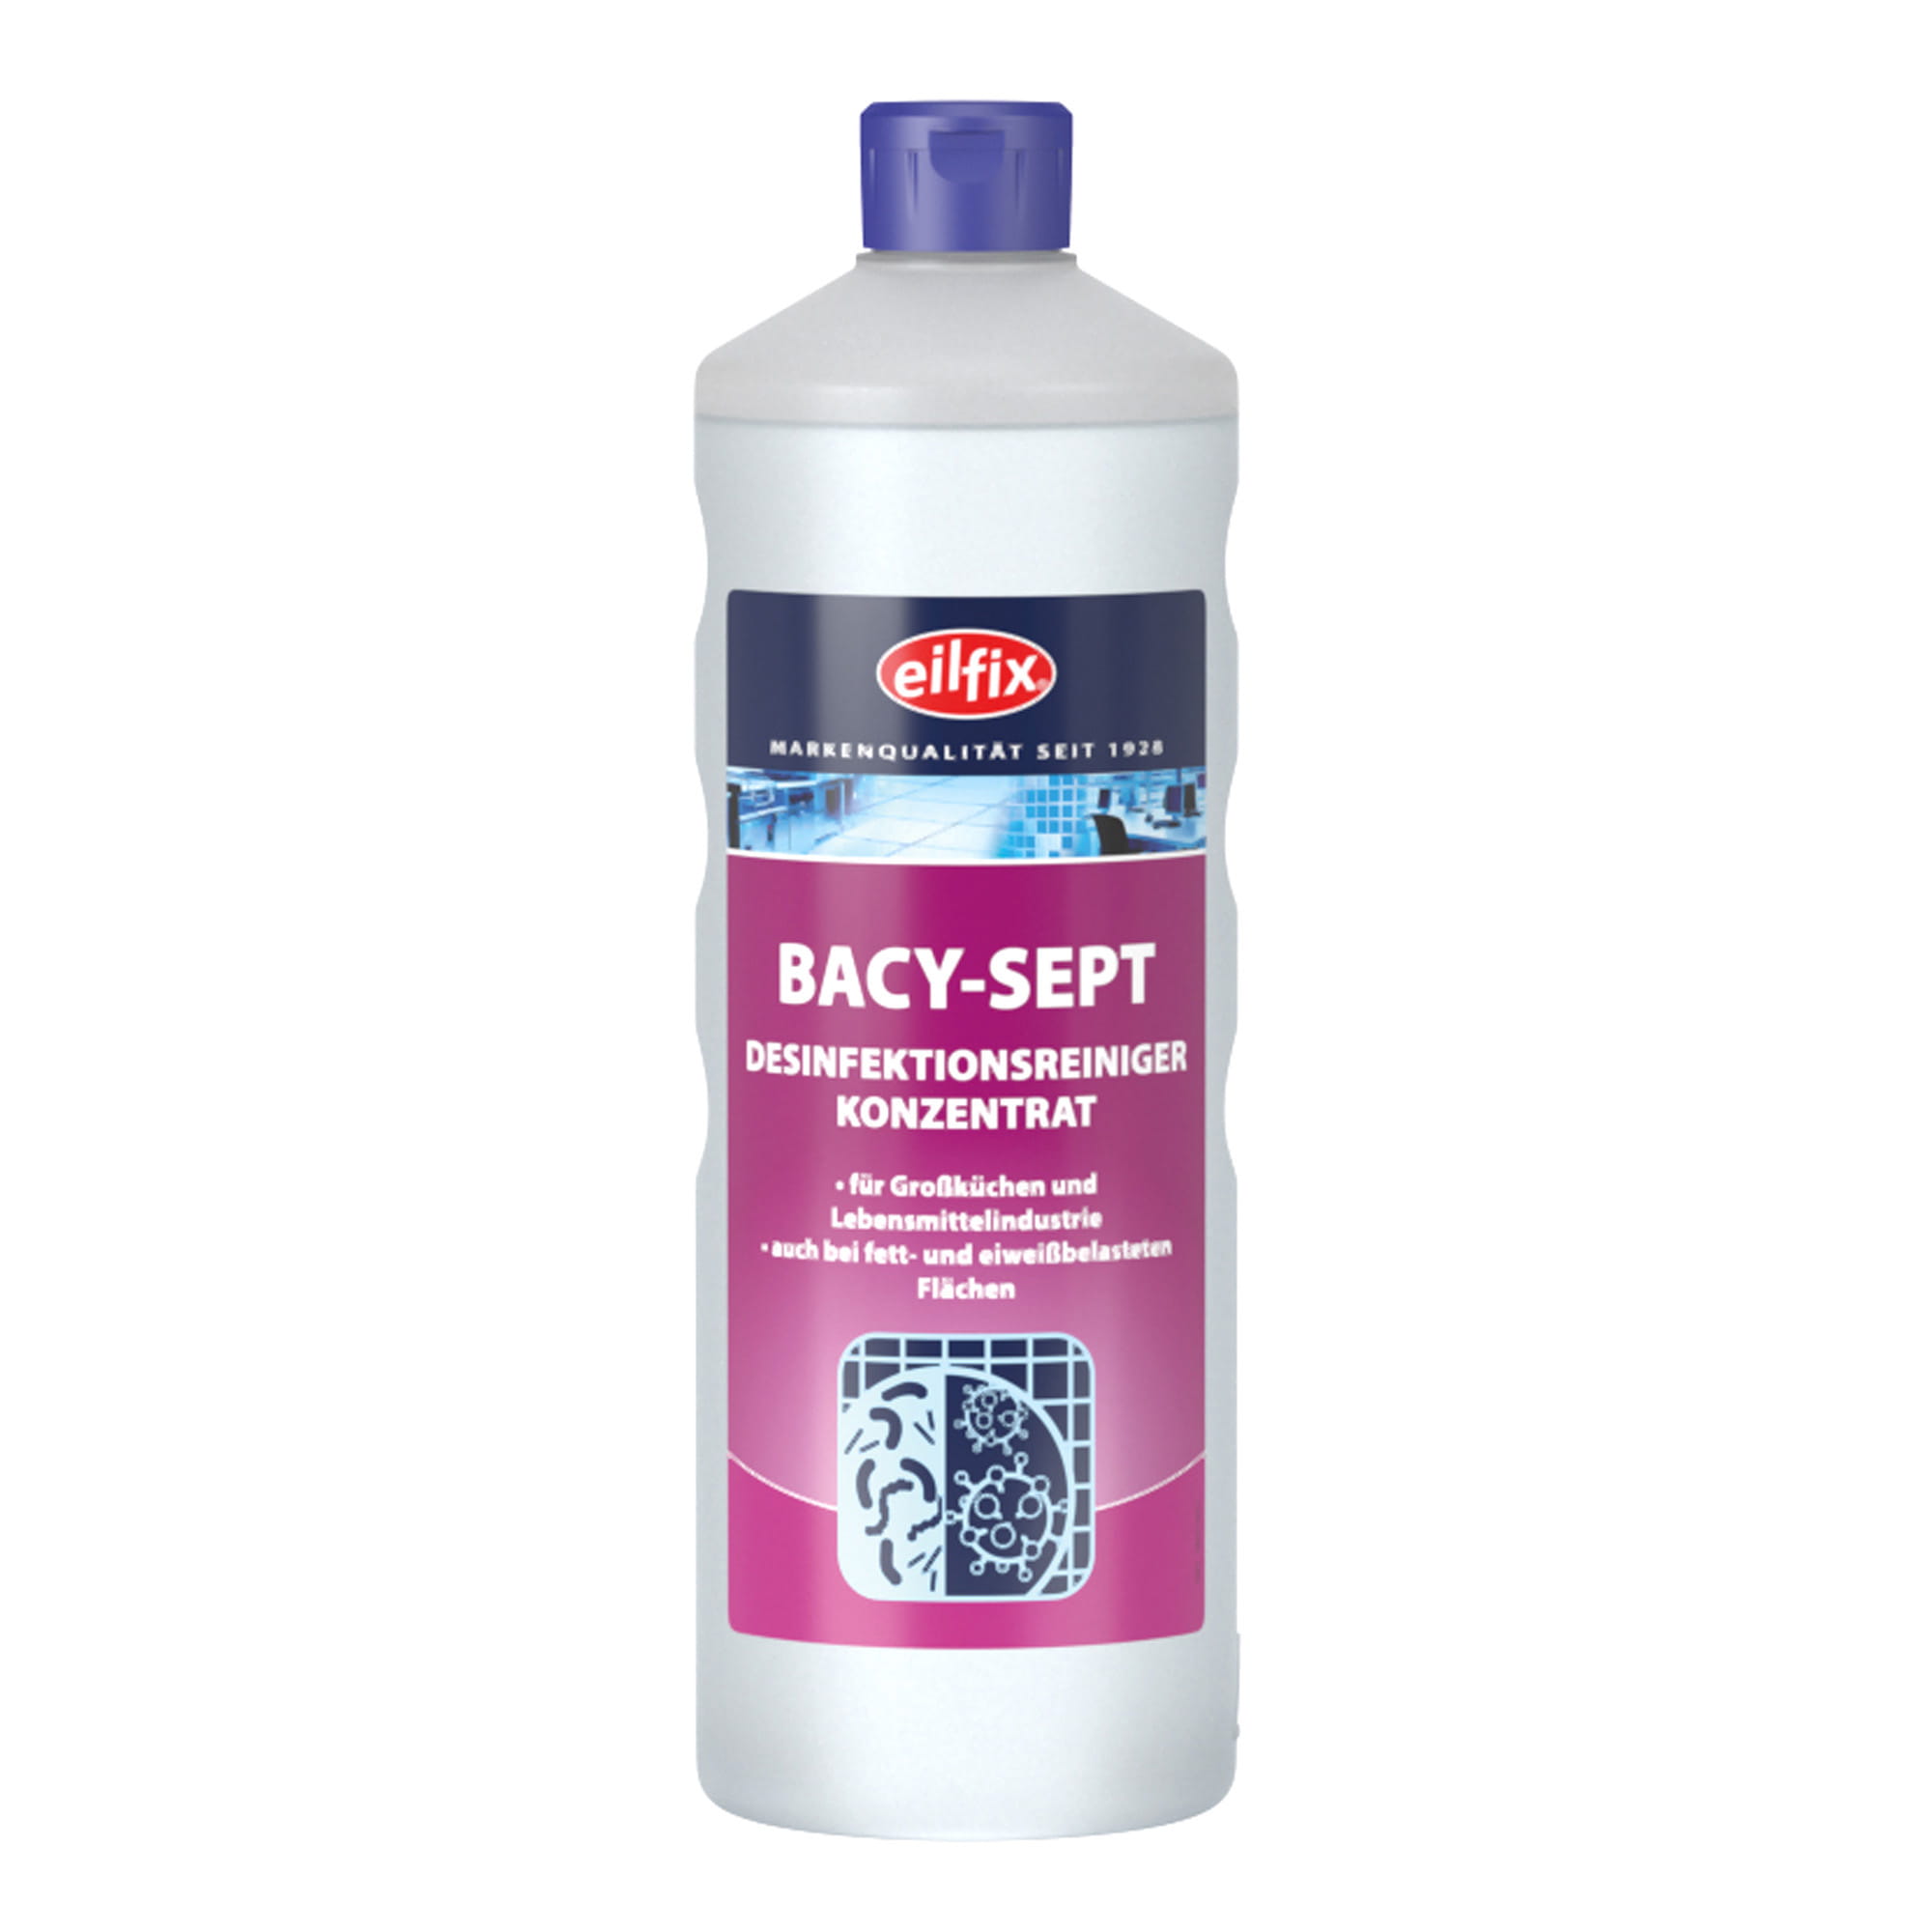 Eilfix Bacy-Sept Desinfektionsreiniger 1 Liter Flasche 100054-001-000_1